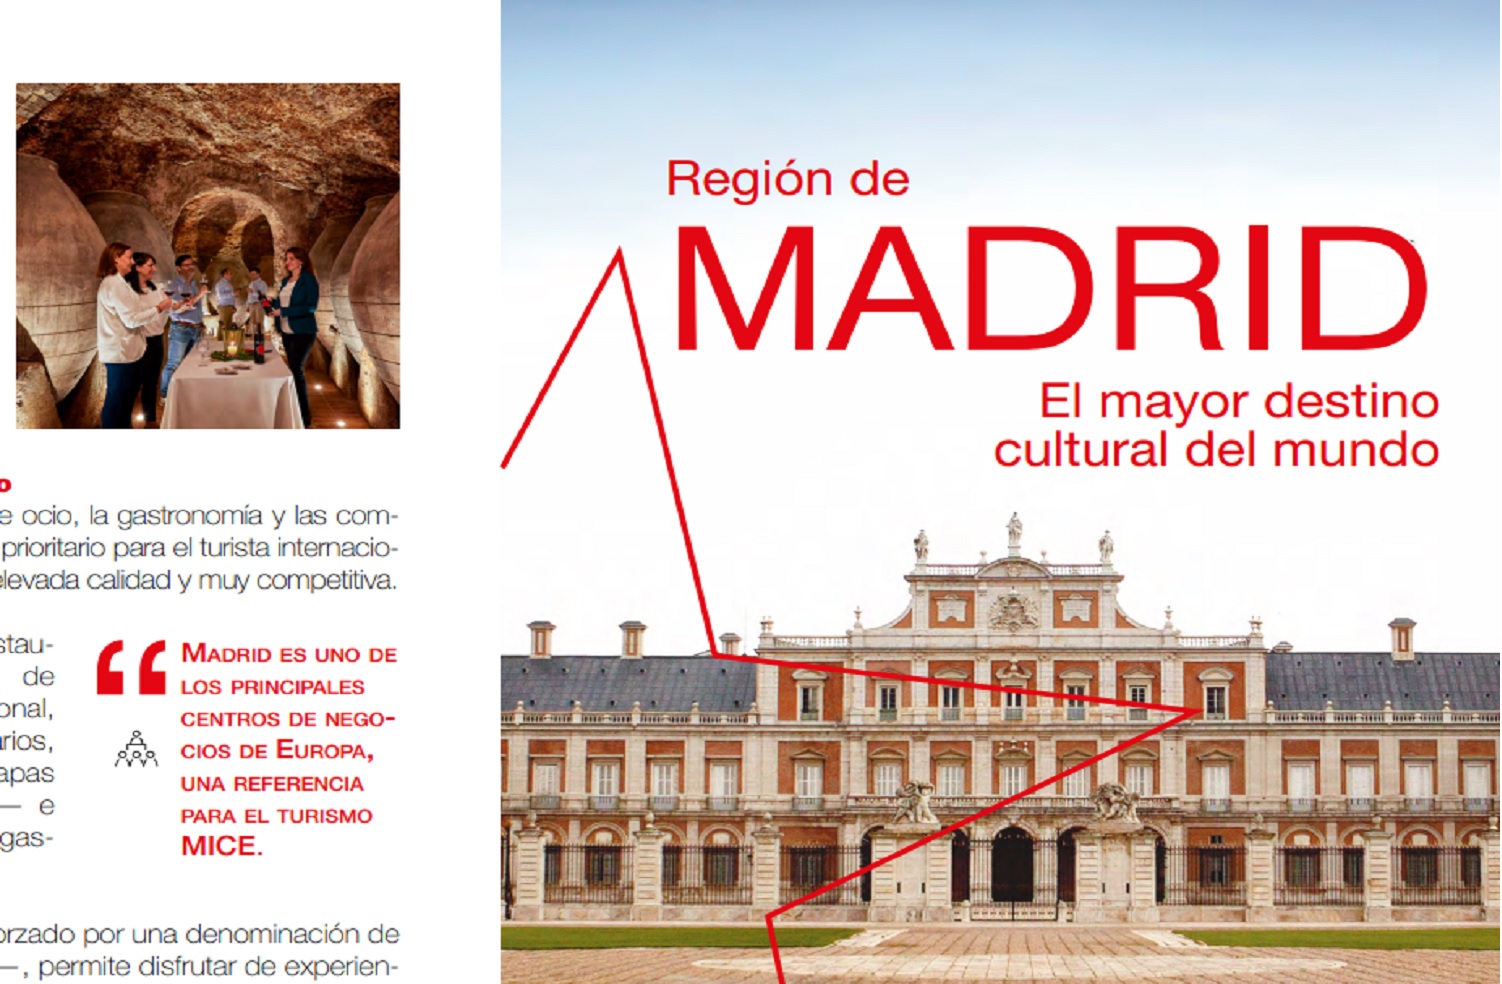 Región de Madrid - El mayor destino cultural del mundo